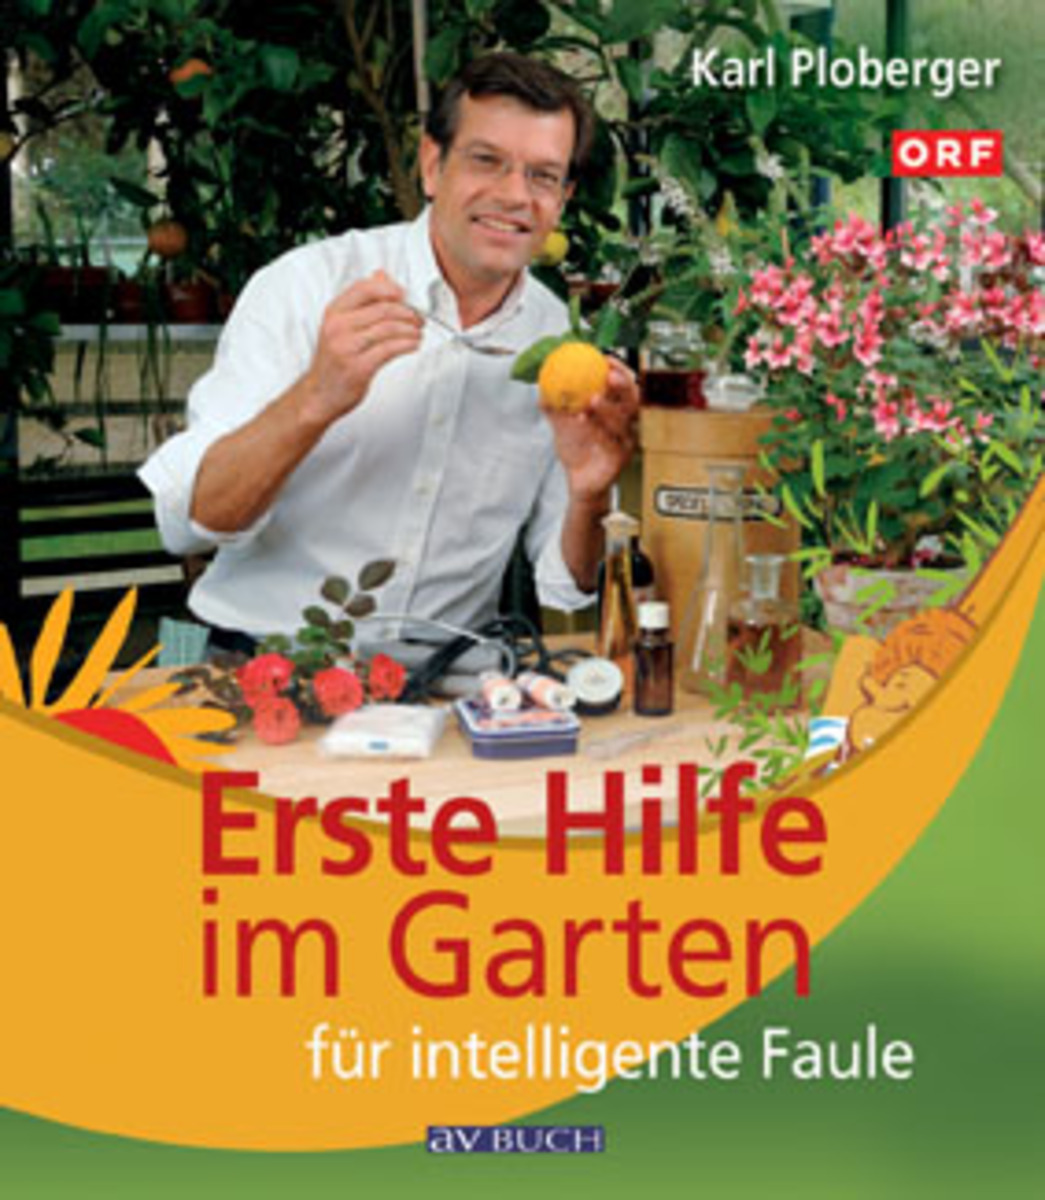 Karl Ploberger Erste Hilfe im Garten für intelligente Faule